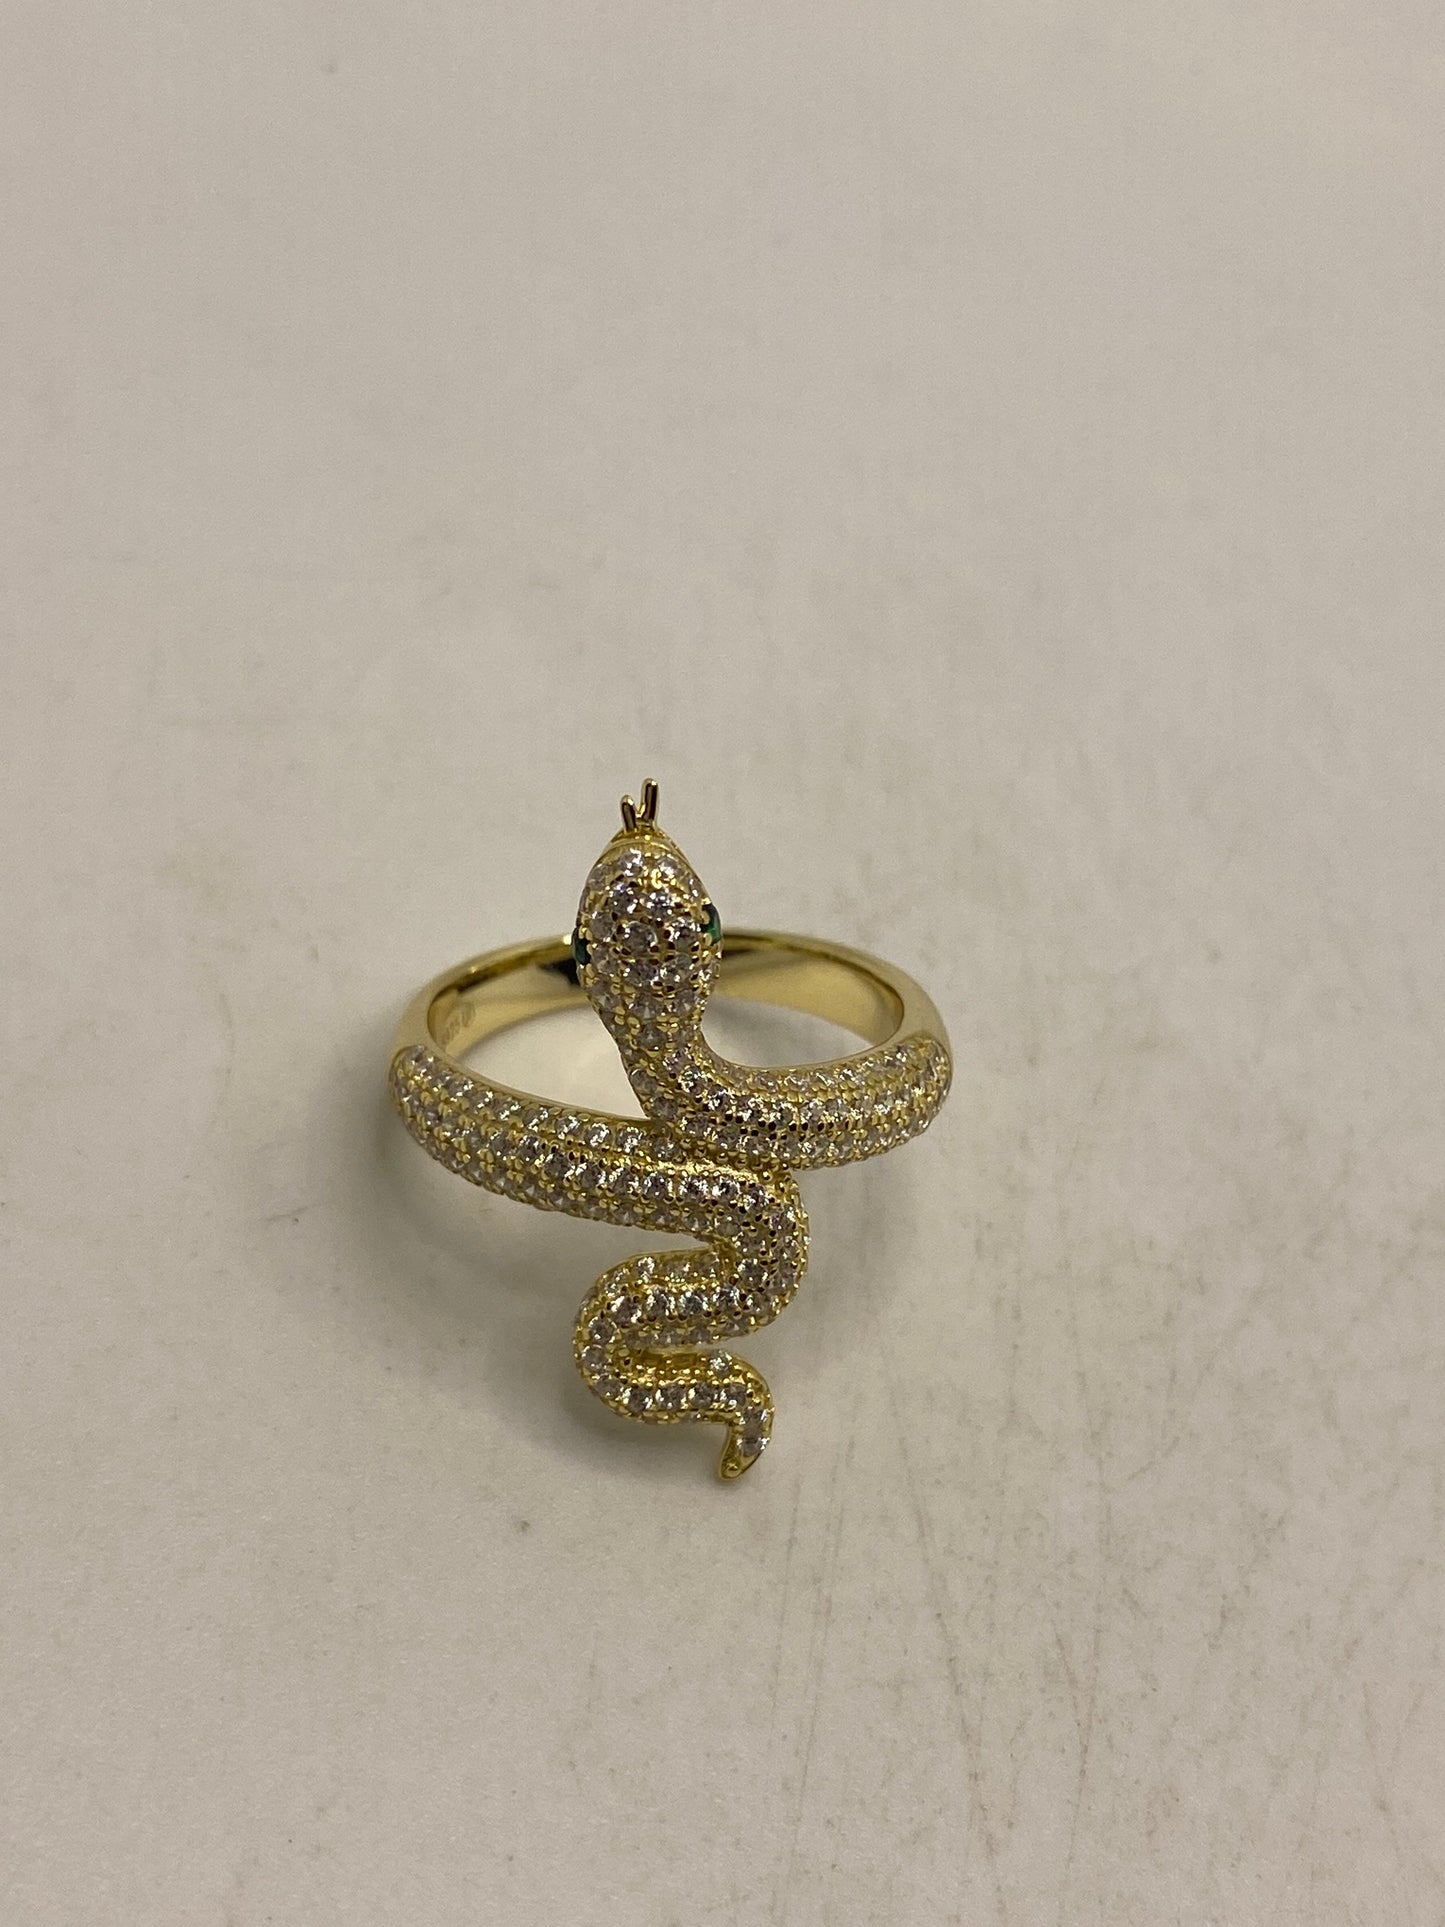 Vintage Snake Ring Golden Sterling Silver Crystal Cocktail Ring